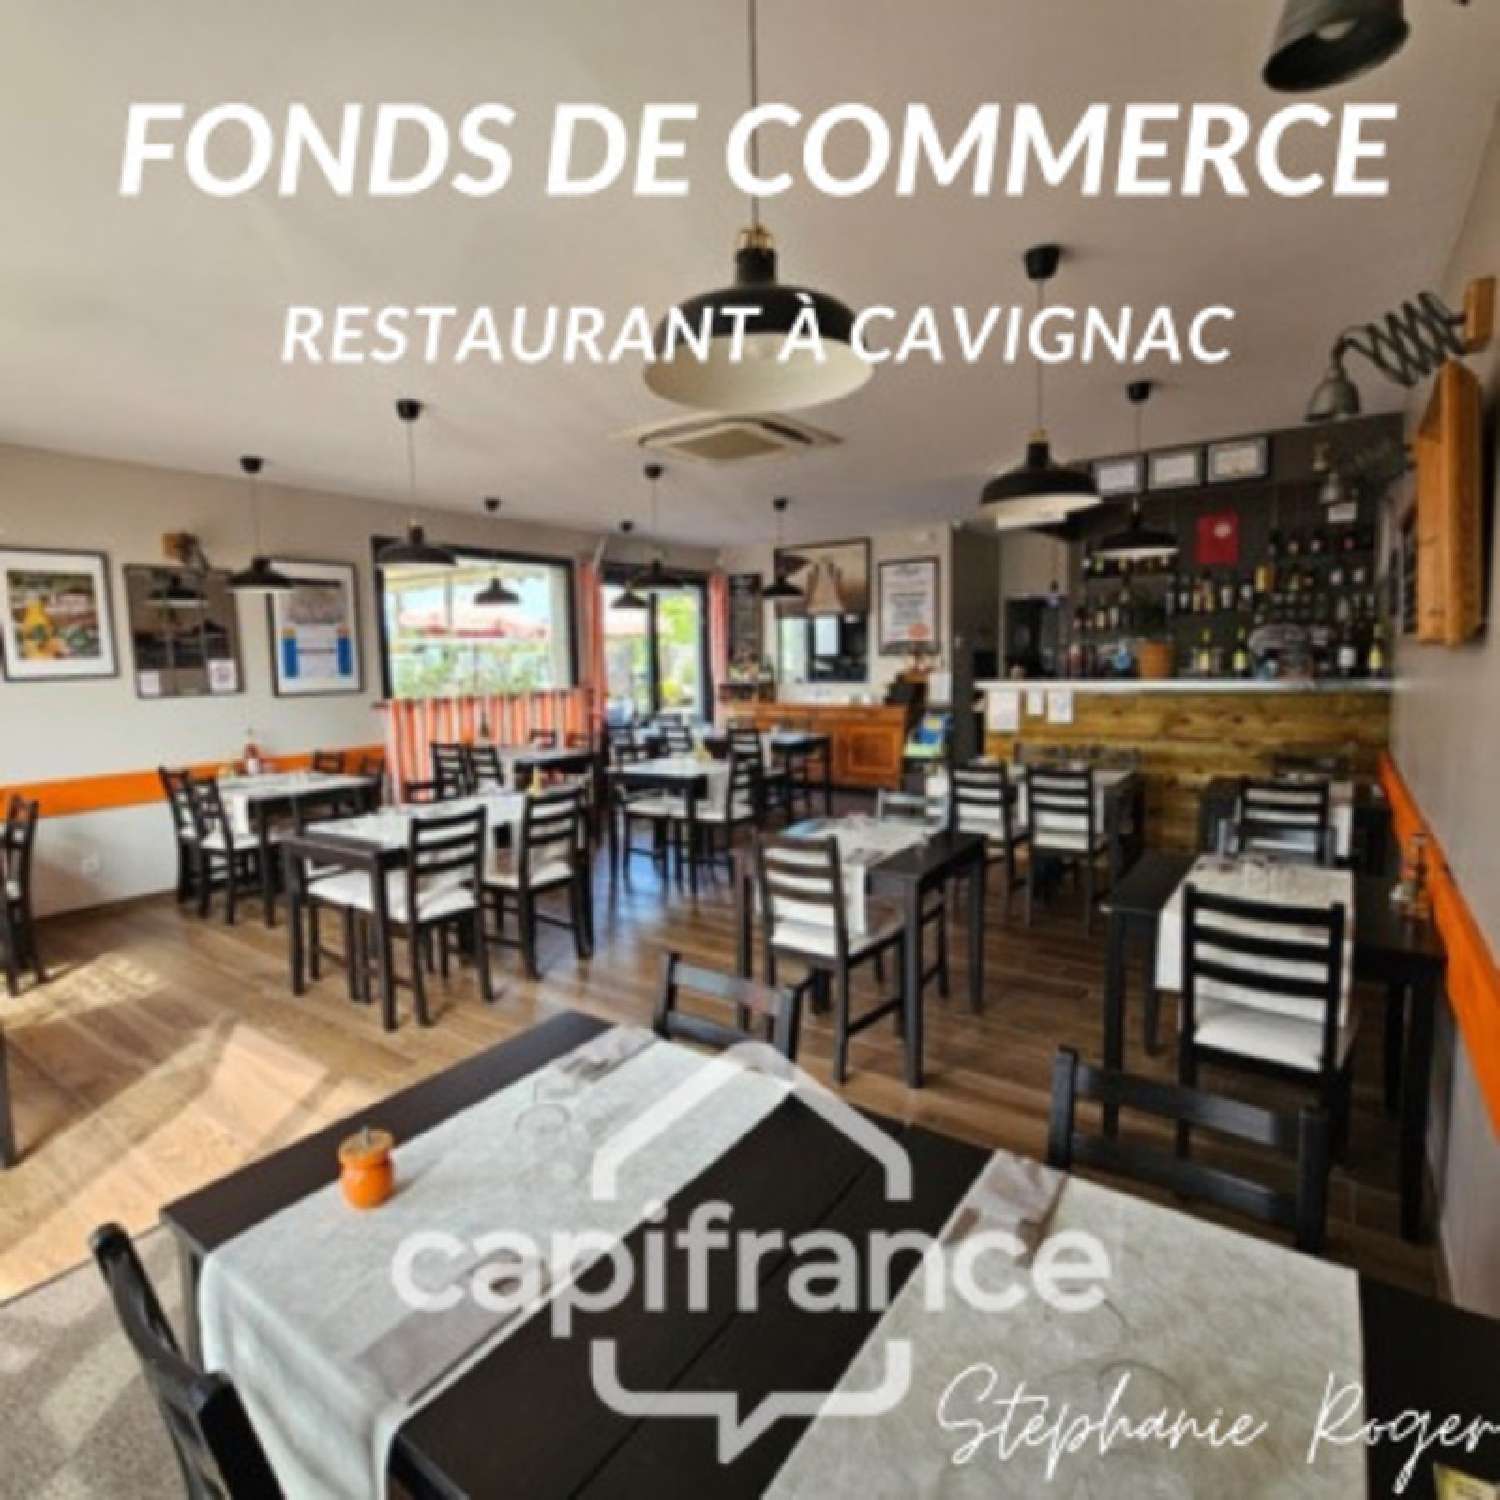  à vendre restaurant Cavignac Gironde 1